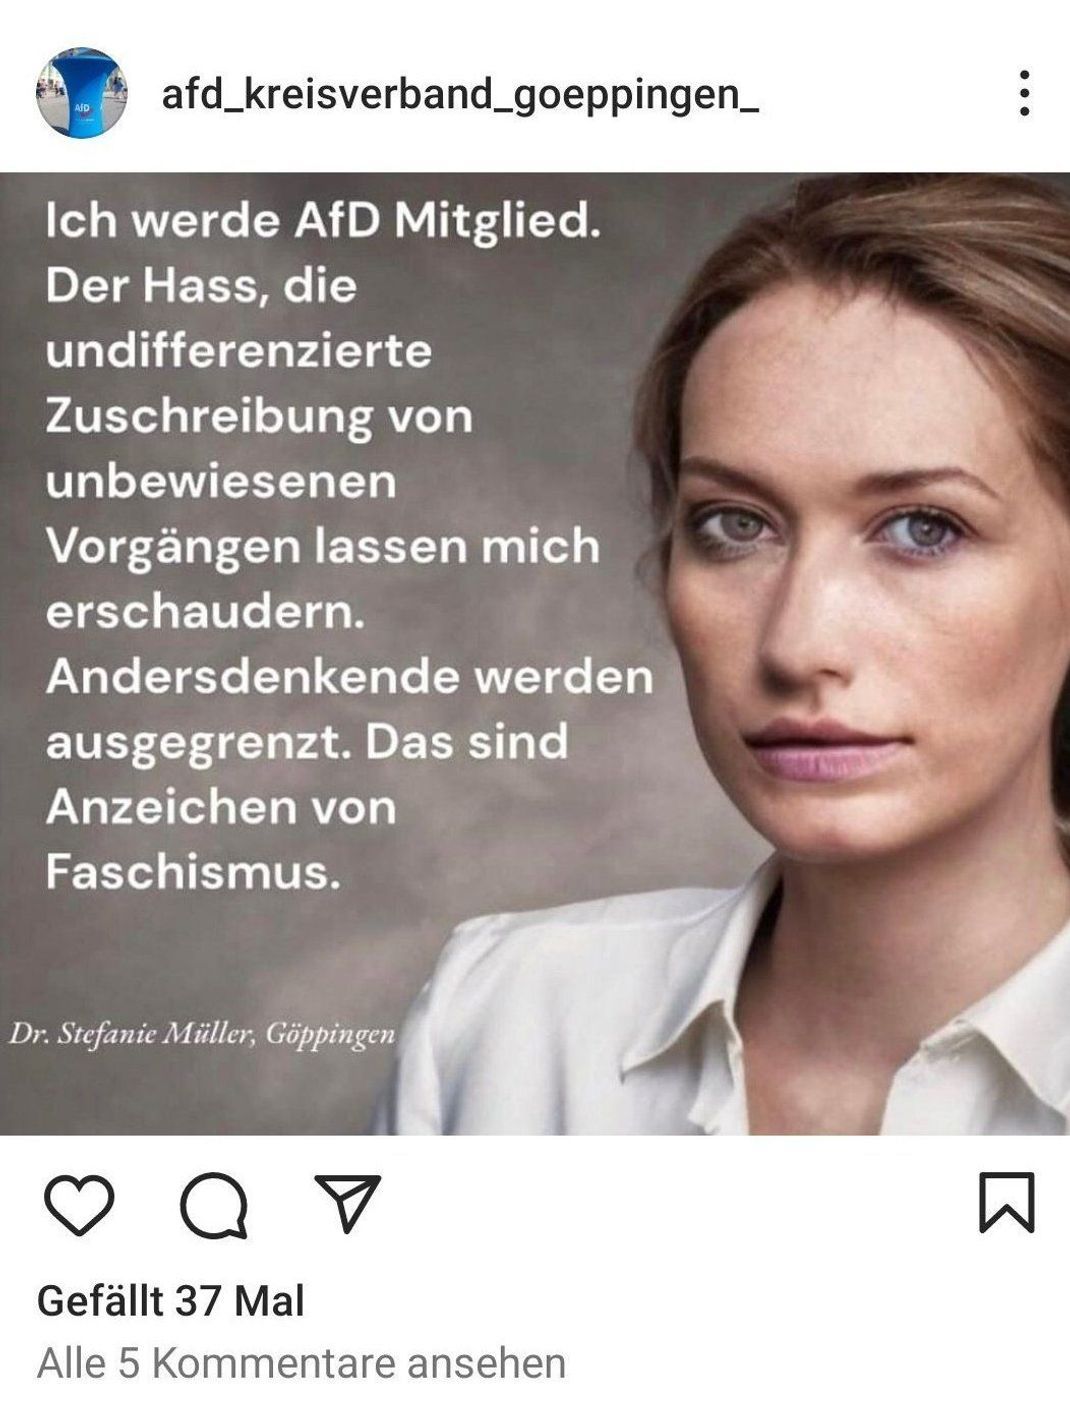 Ein Screenshot des Instagram-Posts des AfD-Kreisverbandes Göppingen zeigt ein durch eine Künstliche Intelligenz (KI) erstelltes Foto einer Frau.